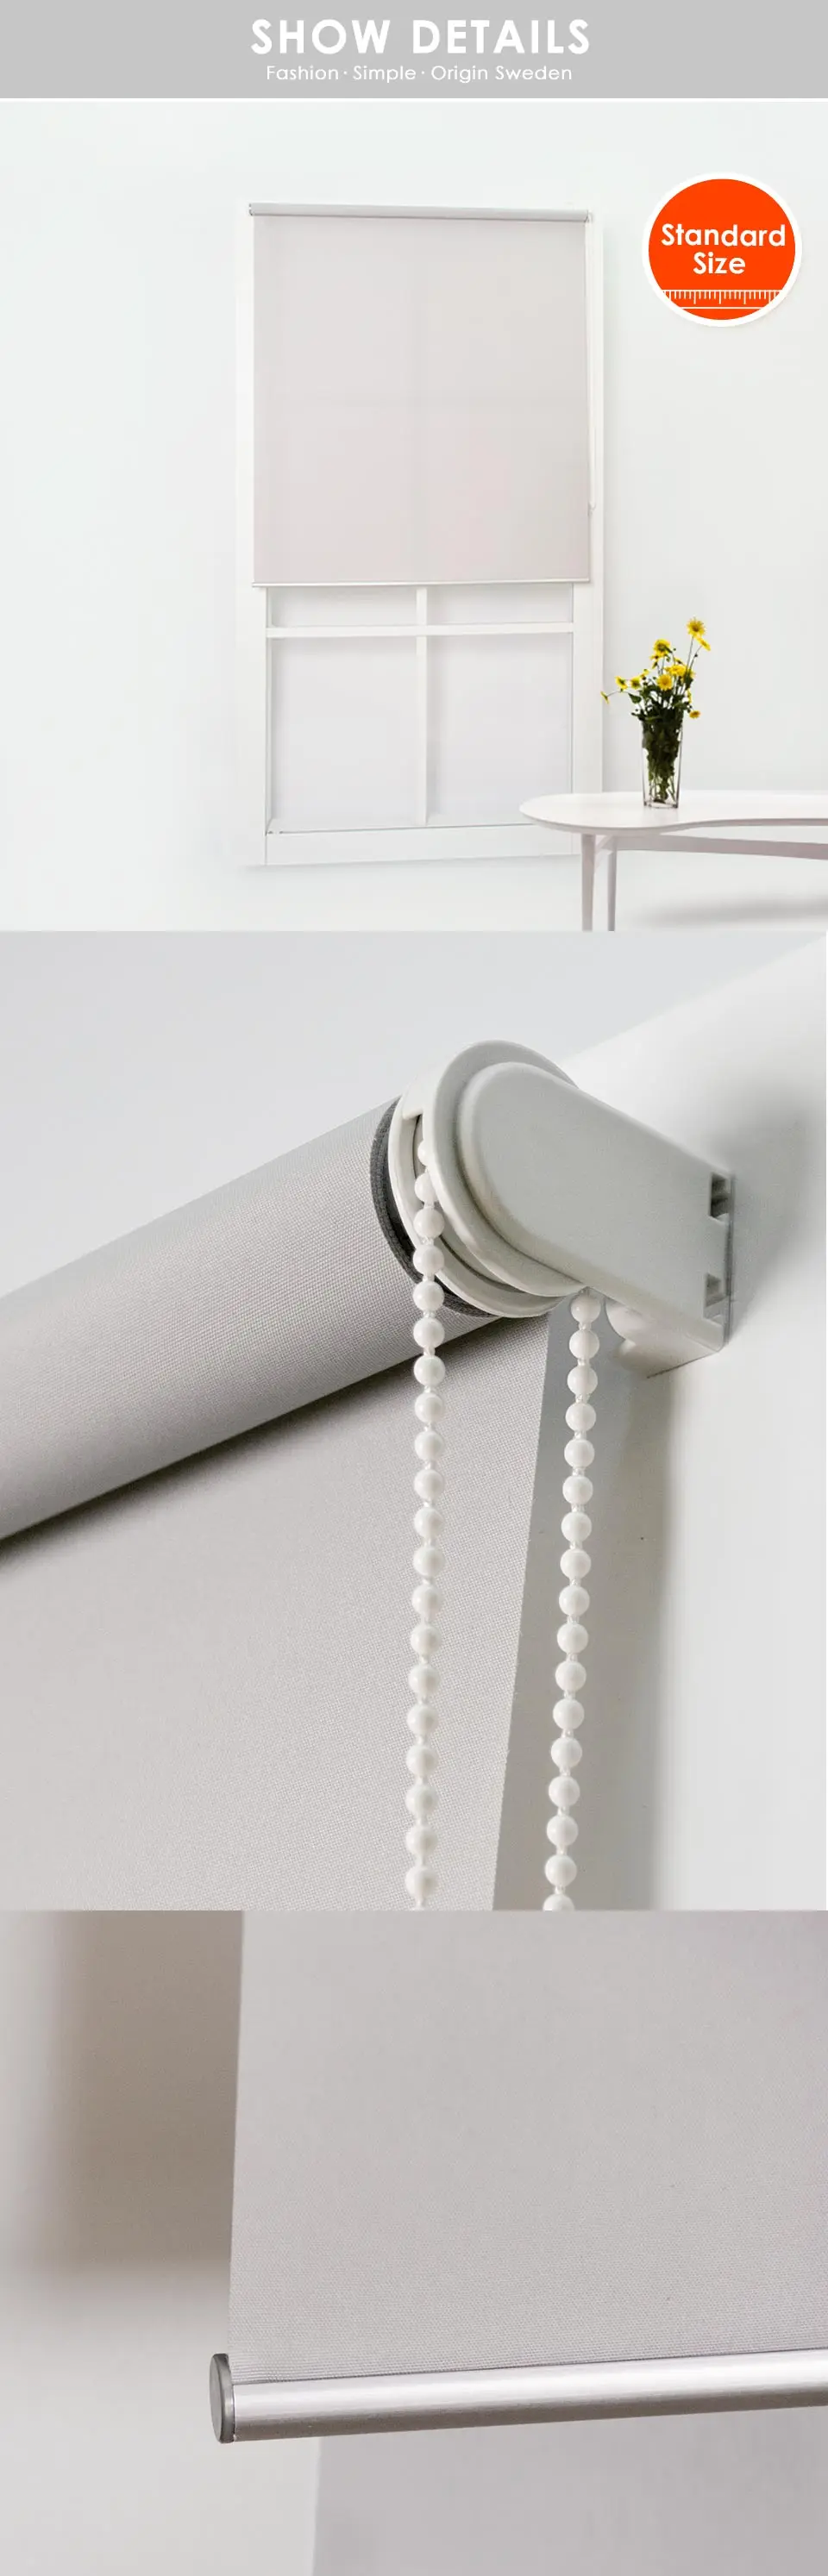 SCHRLING затемненная ткань 28 мм базовая система рулонные шторы для спальни для гостиной стандартный размер